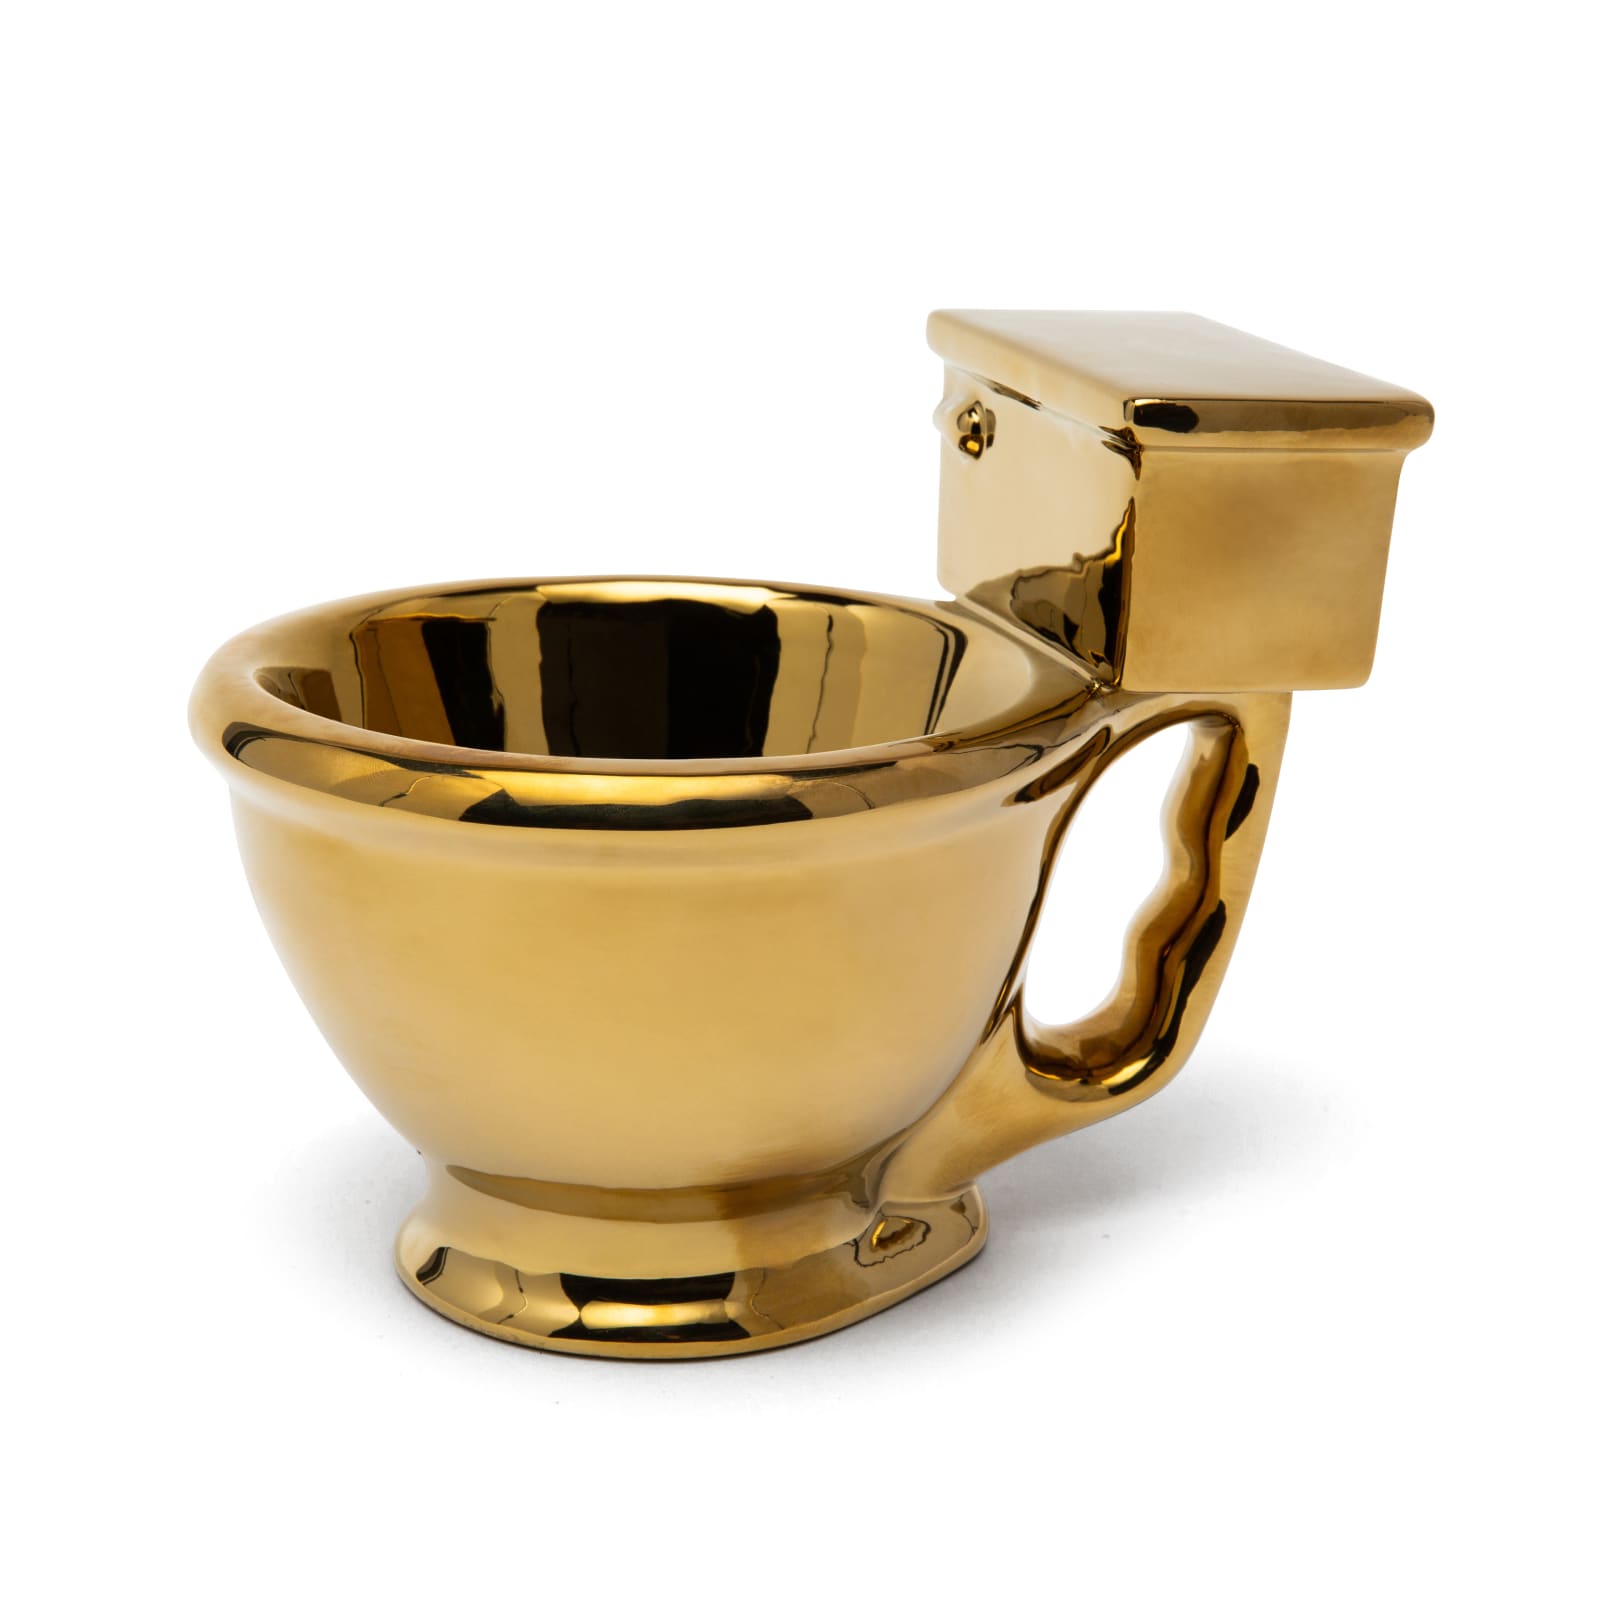 Golden Toilet Mug